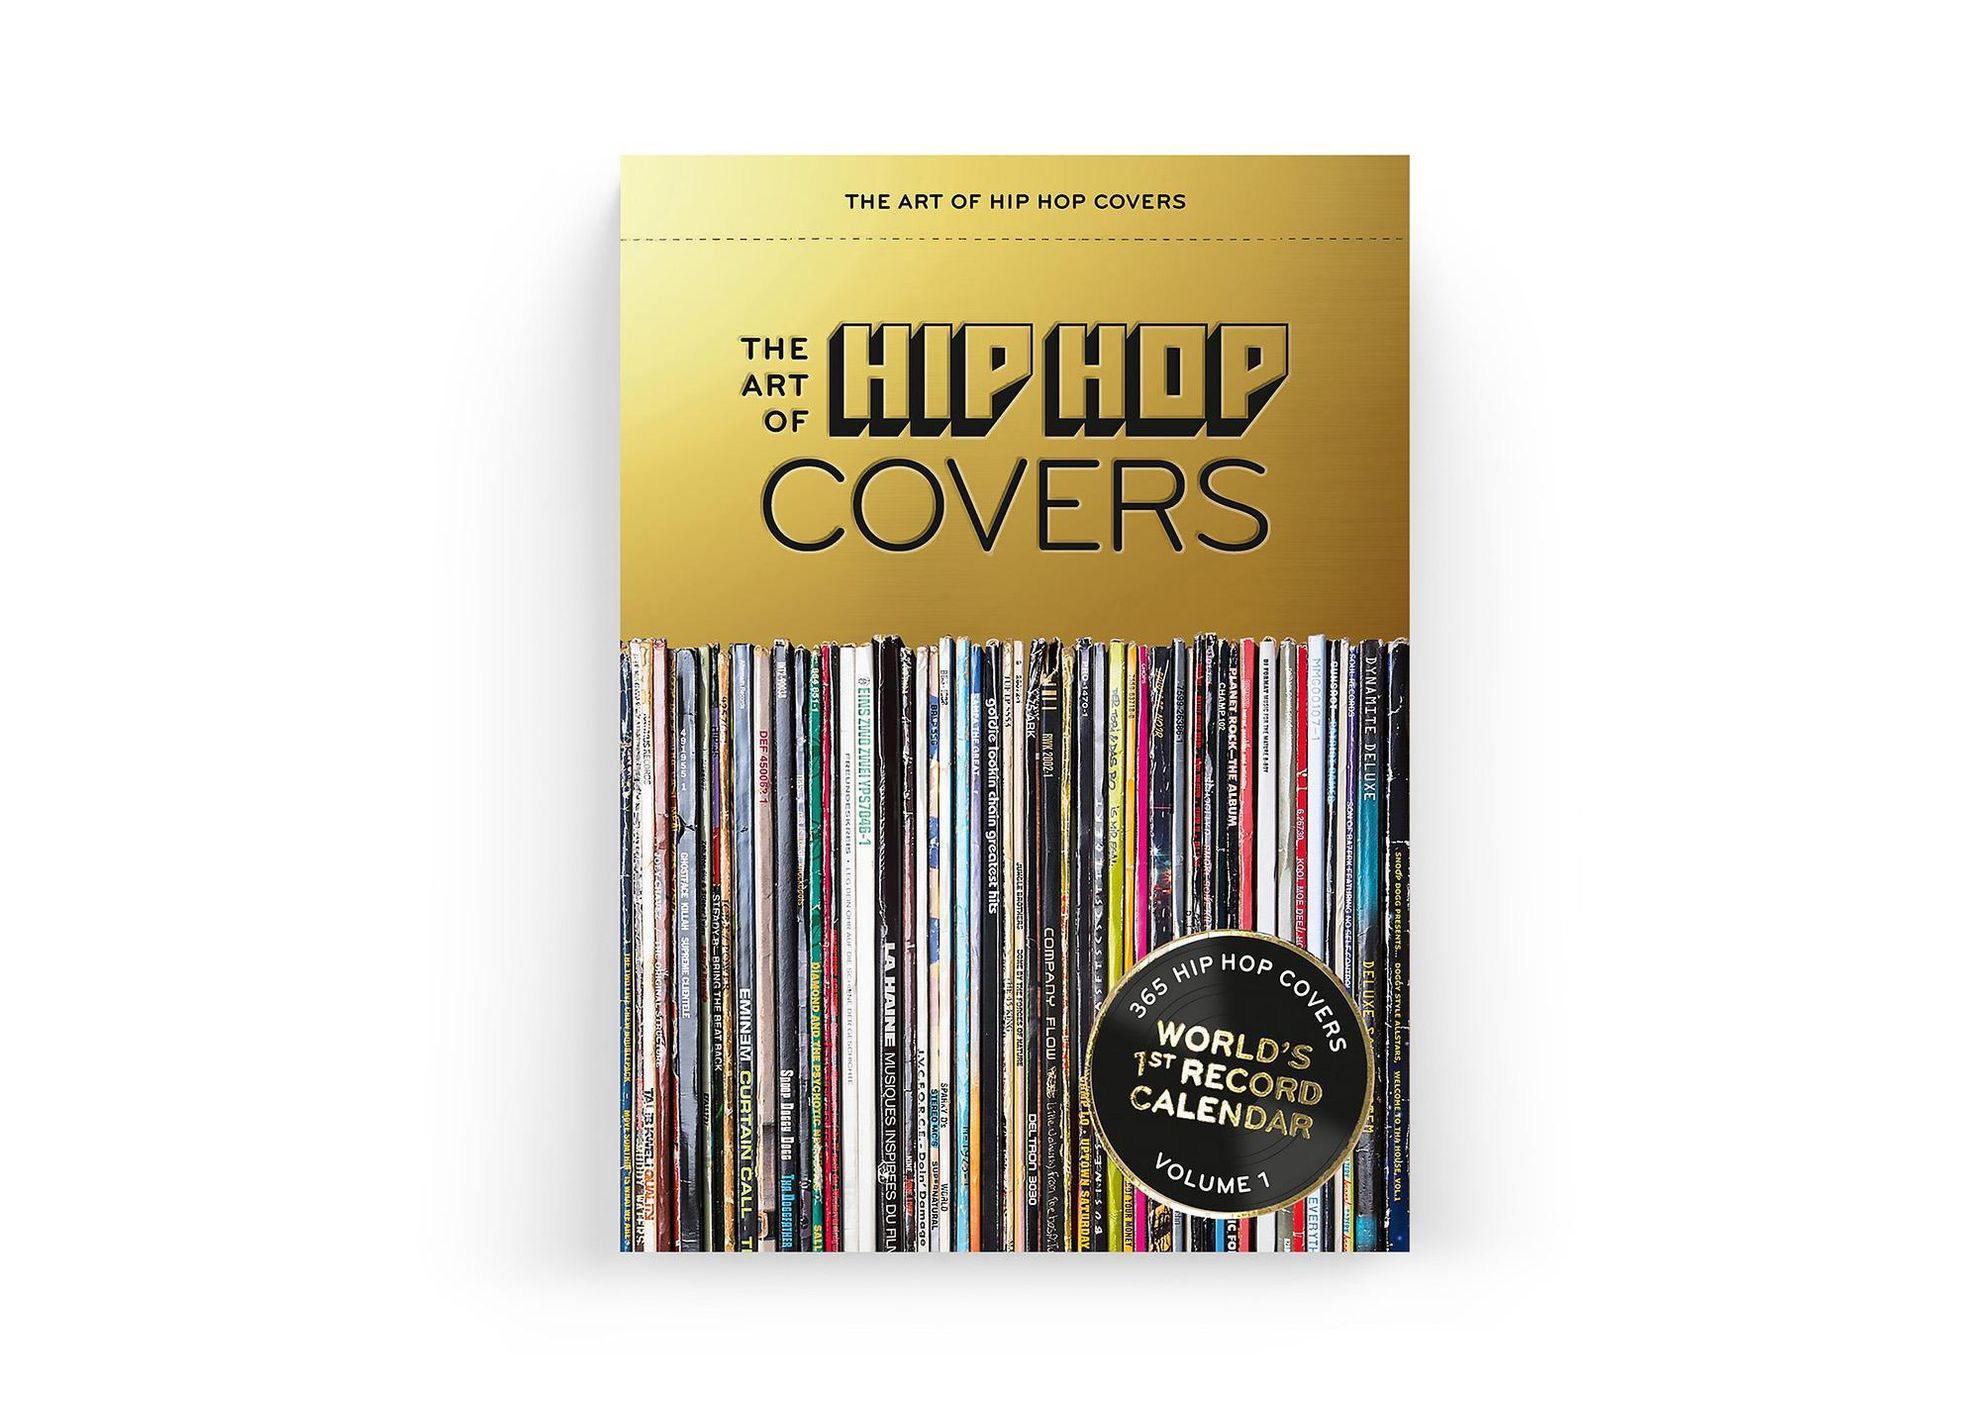 The Art of Hip Hop Covers - Kalender bei Weltbild.de bestellen